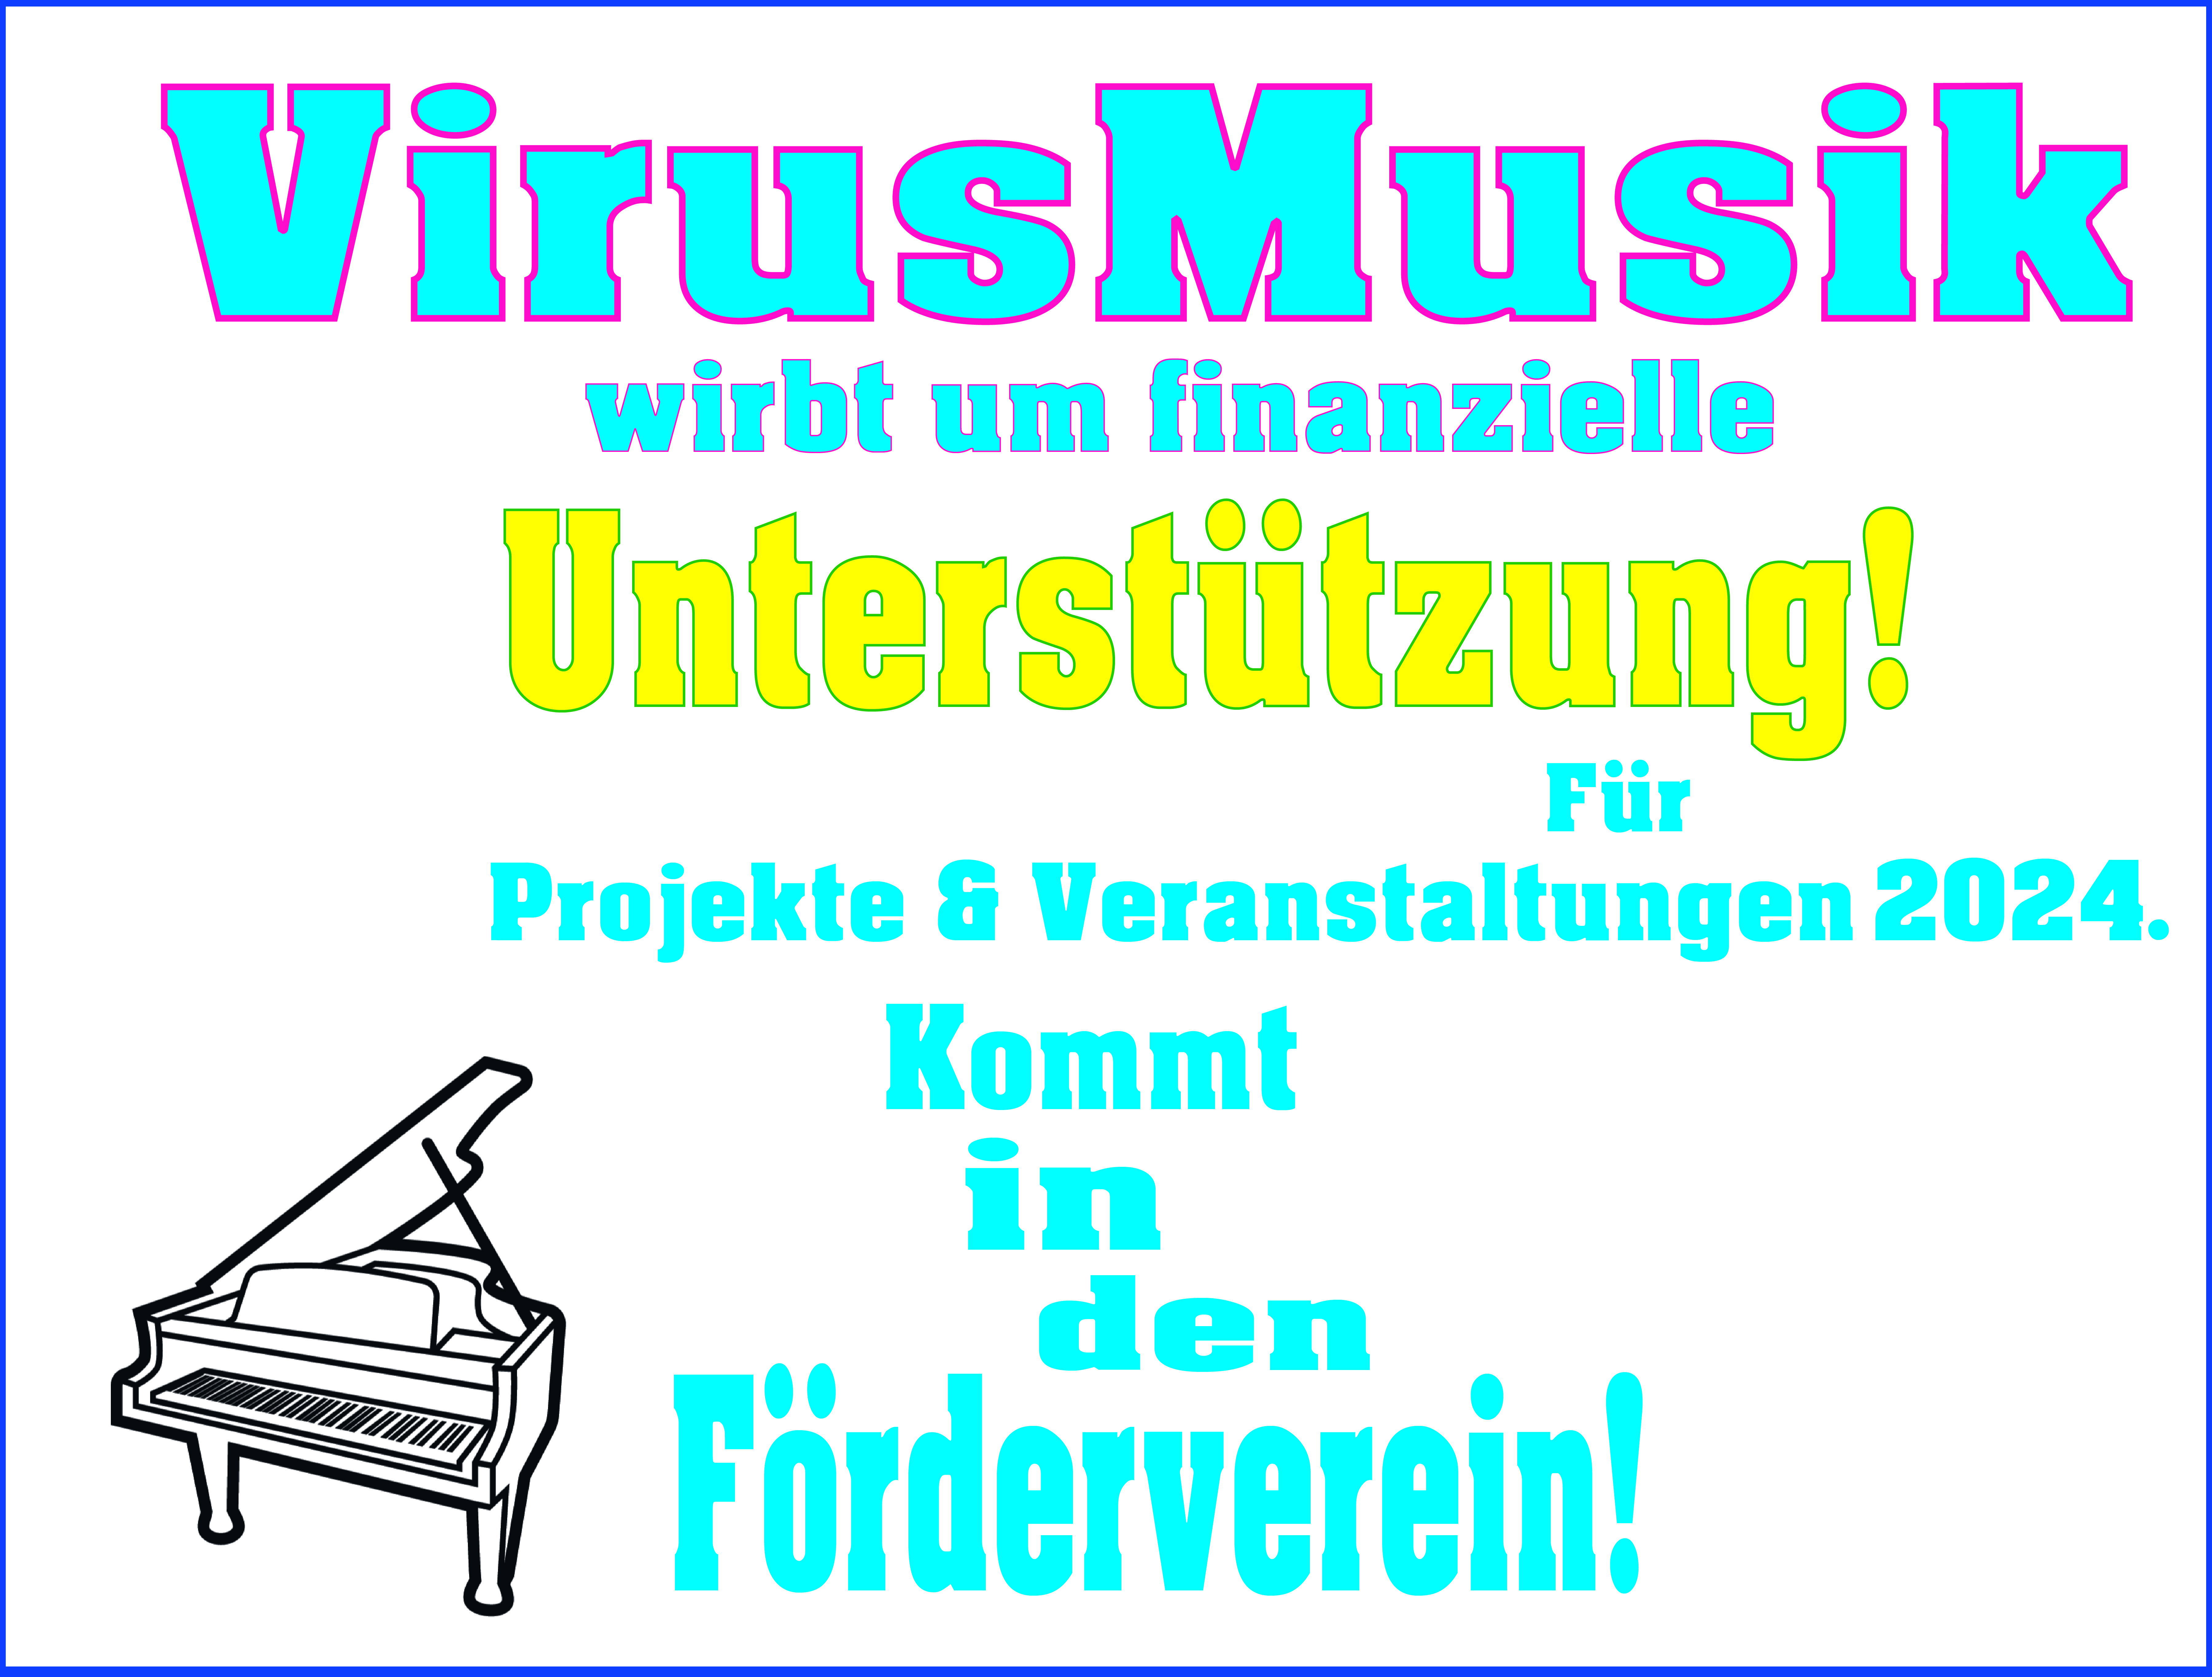 VirusMusik sucht finanzielle Unterstützung für Projekte & Veranstaltungen 2024.